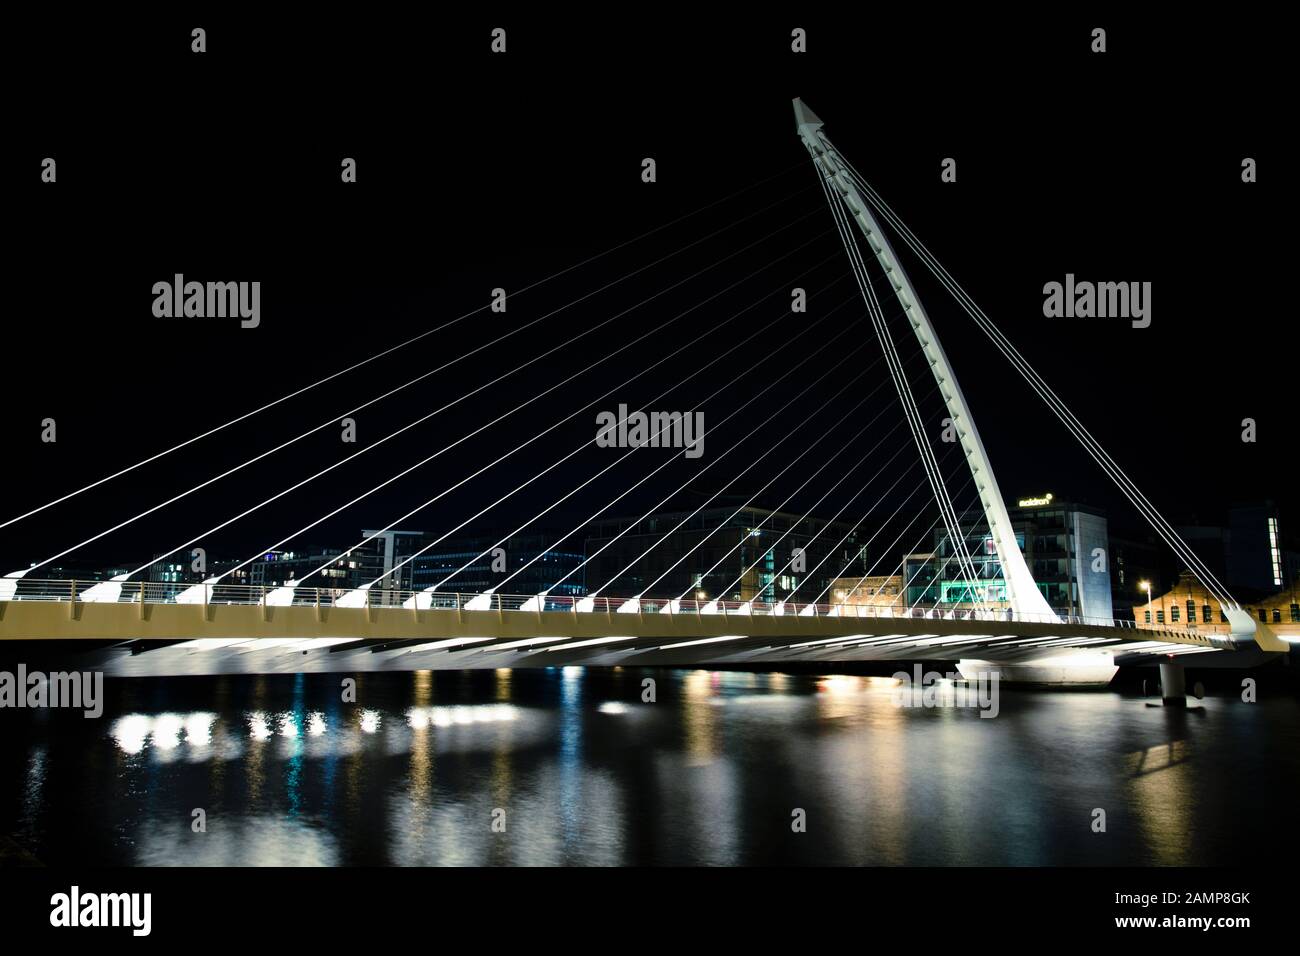 Dublín, Irlanda - 18 de agosto de 2012: Disparo nocturno de exposición lenta del puente Samuel Beckett sobre el río Liffey. Foto de stock